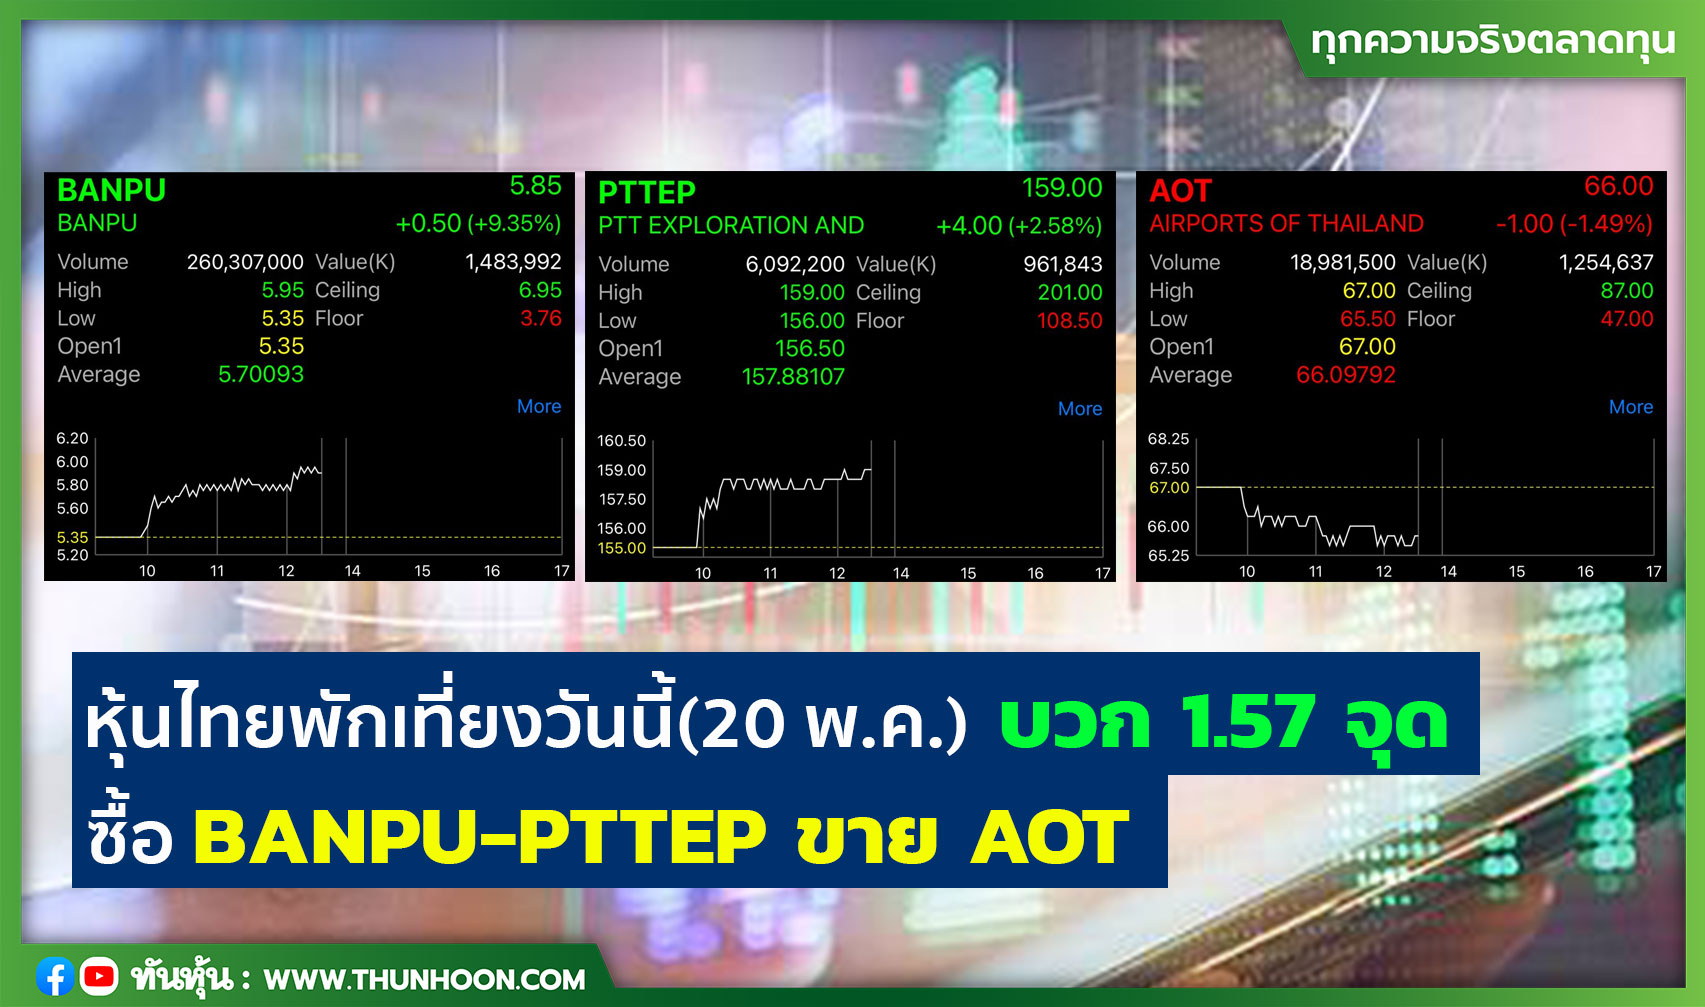 หุ้นไทยพักเที่ยงวันนี้(20 พ.ค.) บวก 1.57 จุด ซื้อ BANPU-PTTEP ขาย AOT